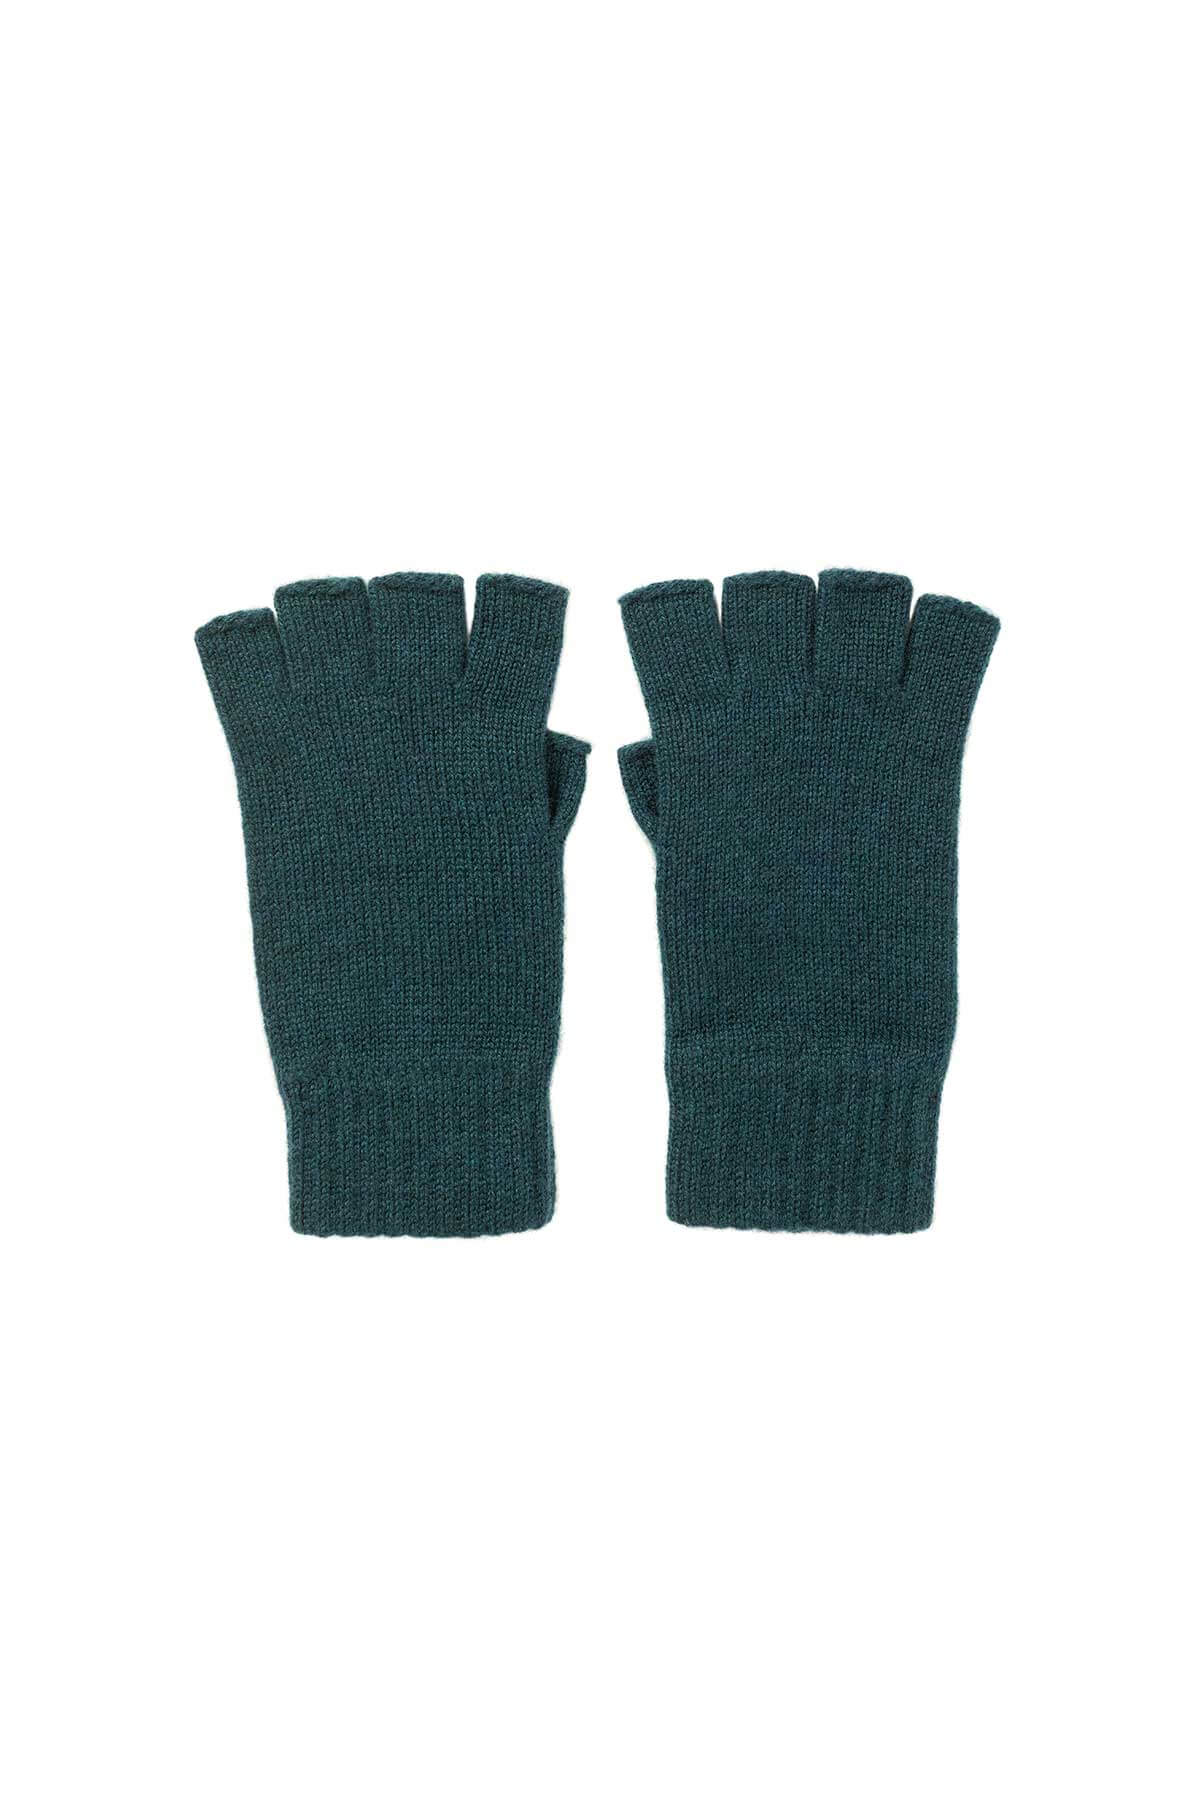 Johnstons of Elgin’s Mallard green Women's Fingerless Cashmere Gloves a white background HAY02223HC7126